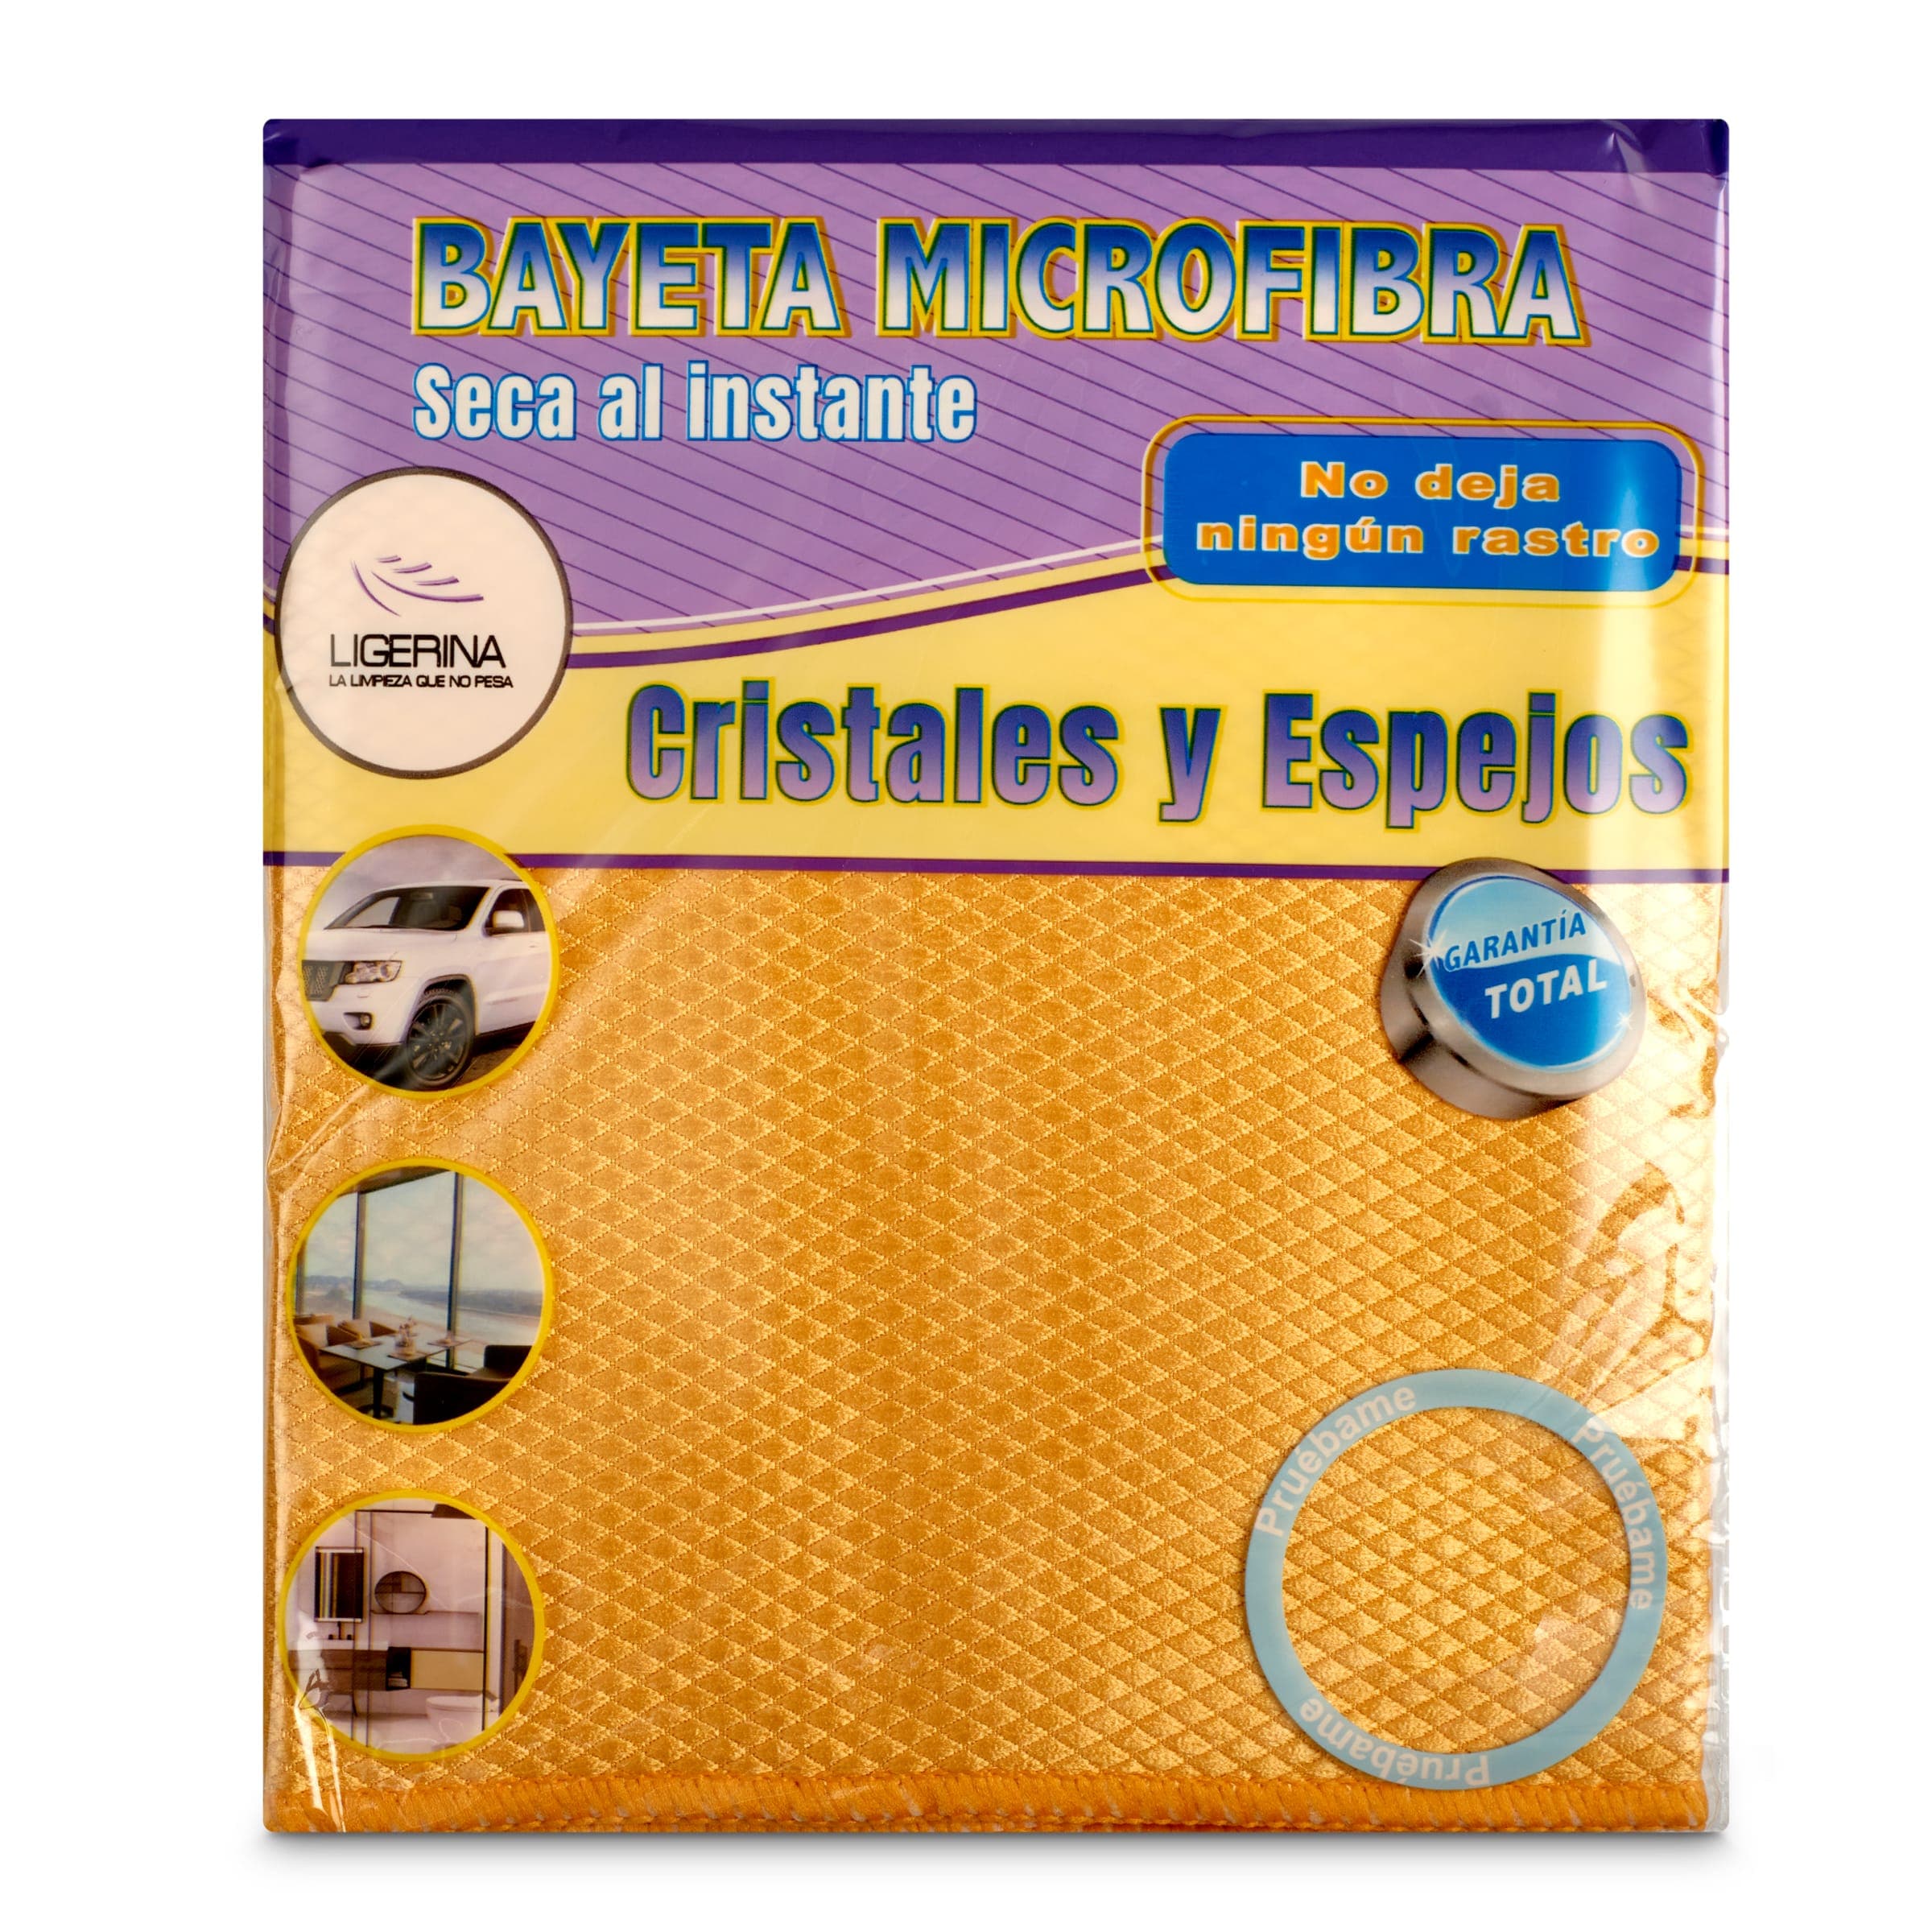 Bayeta microfibra cristales y espejos Ligerina bolsa 1 unidad